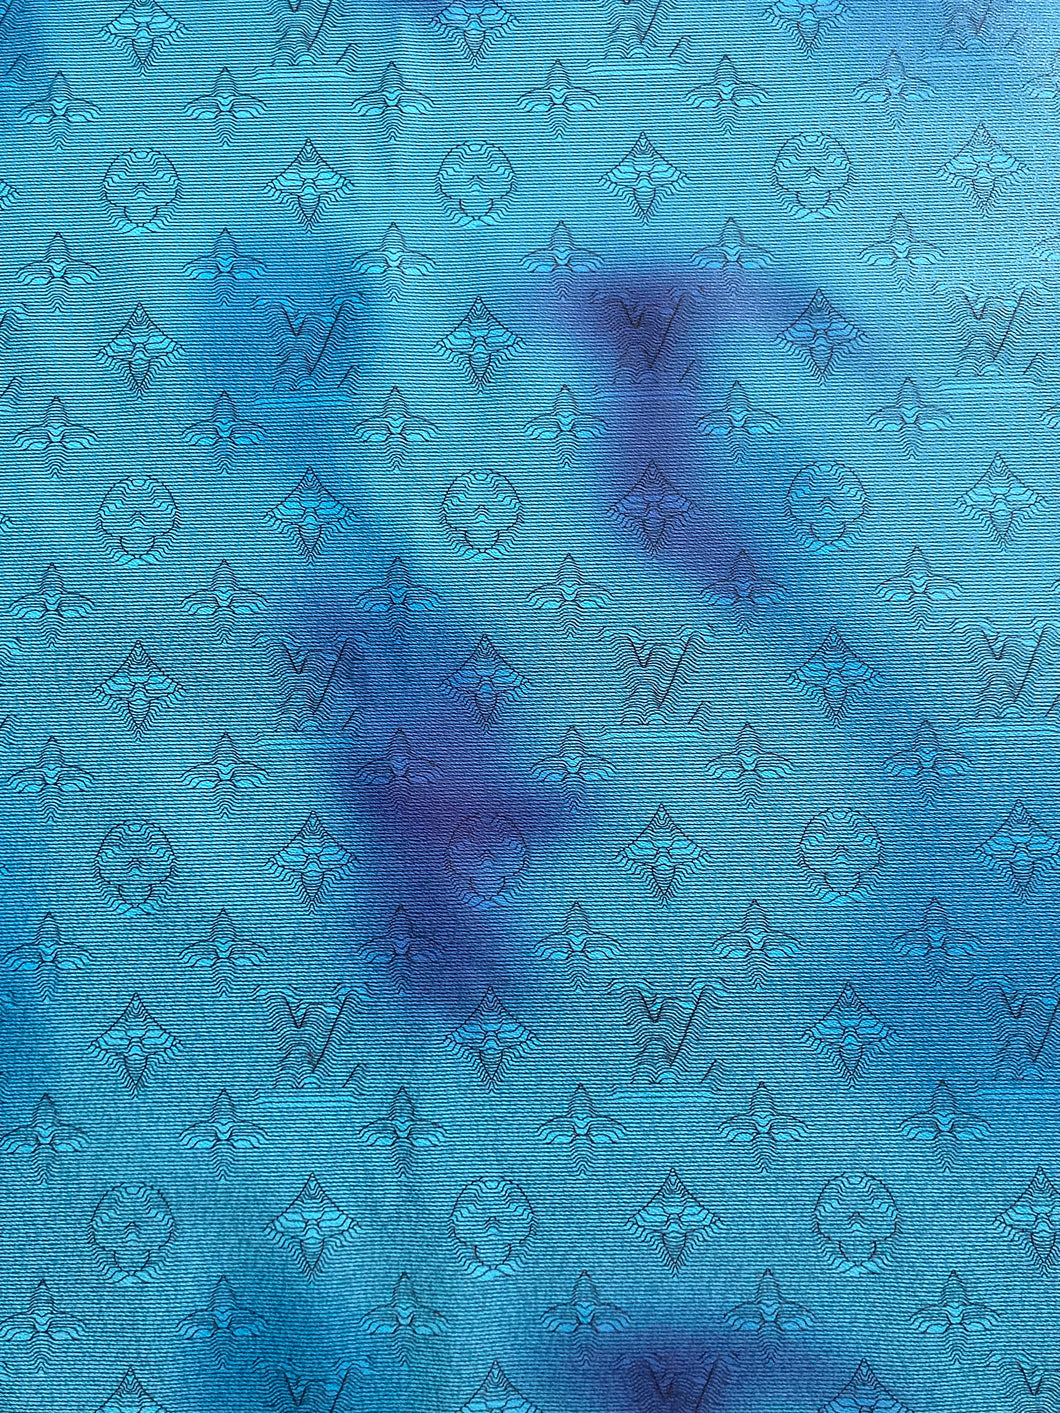 Designer Handmade Blue Camouflage Vinyl Leather for Custom Handmade